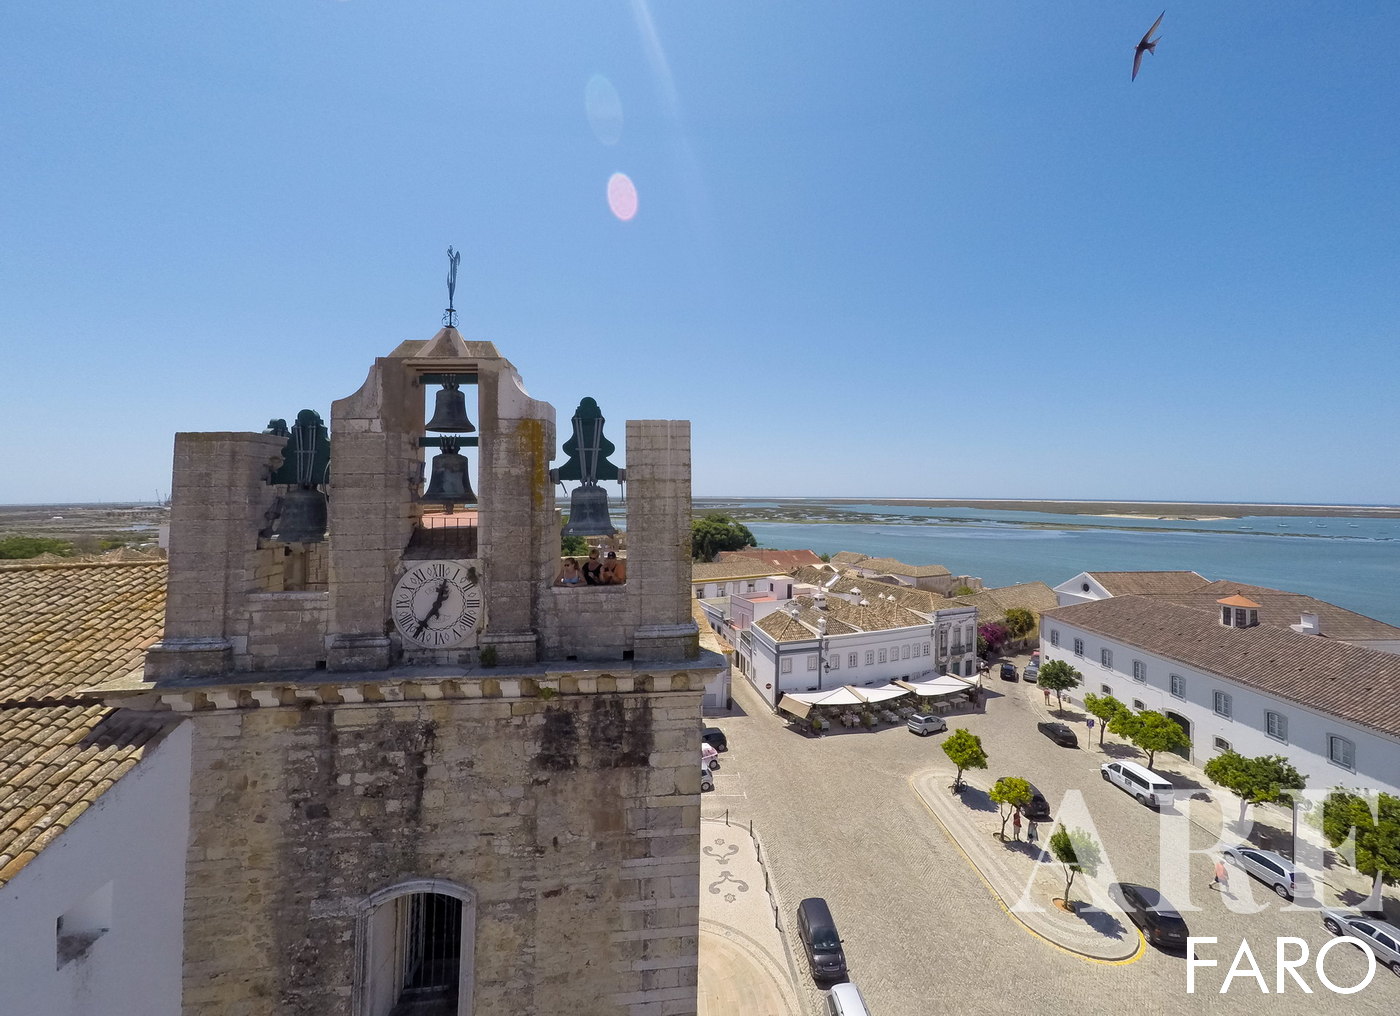 Igreja de Santa Maria, Sé de Faro,</strong> situada na zona velha da cidade de Faro, um dos pontos de visita obrigatória. Do alto da Catedral podemos observar fantásticas vistas panorâmicas sobre a cidade;